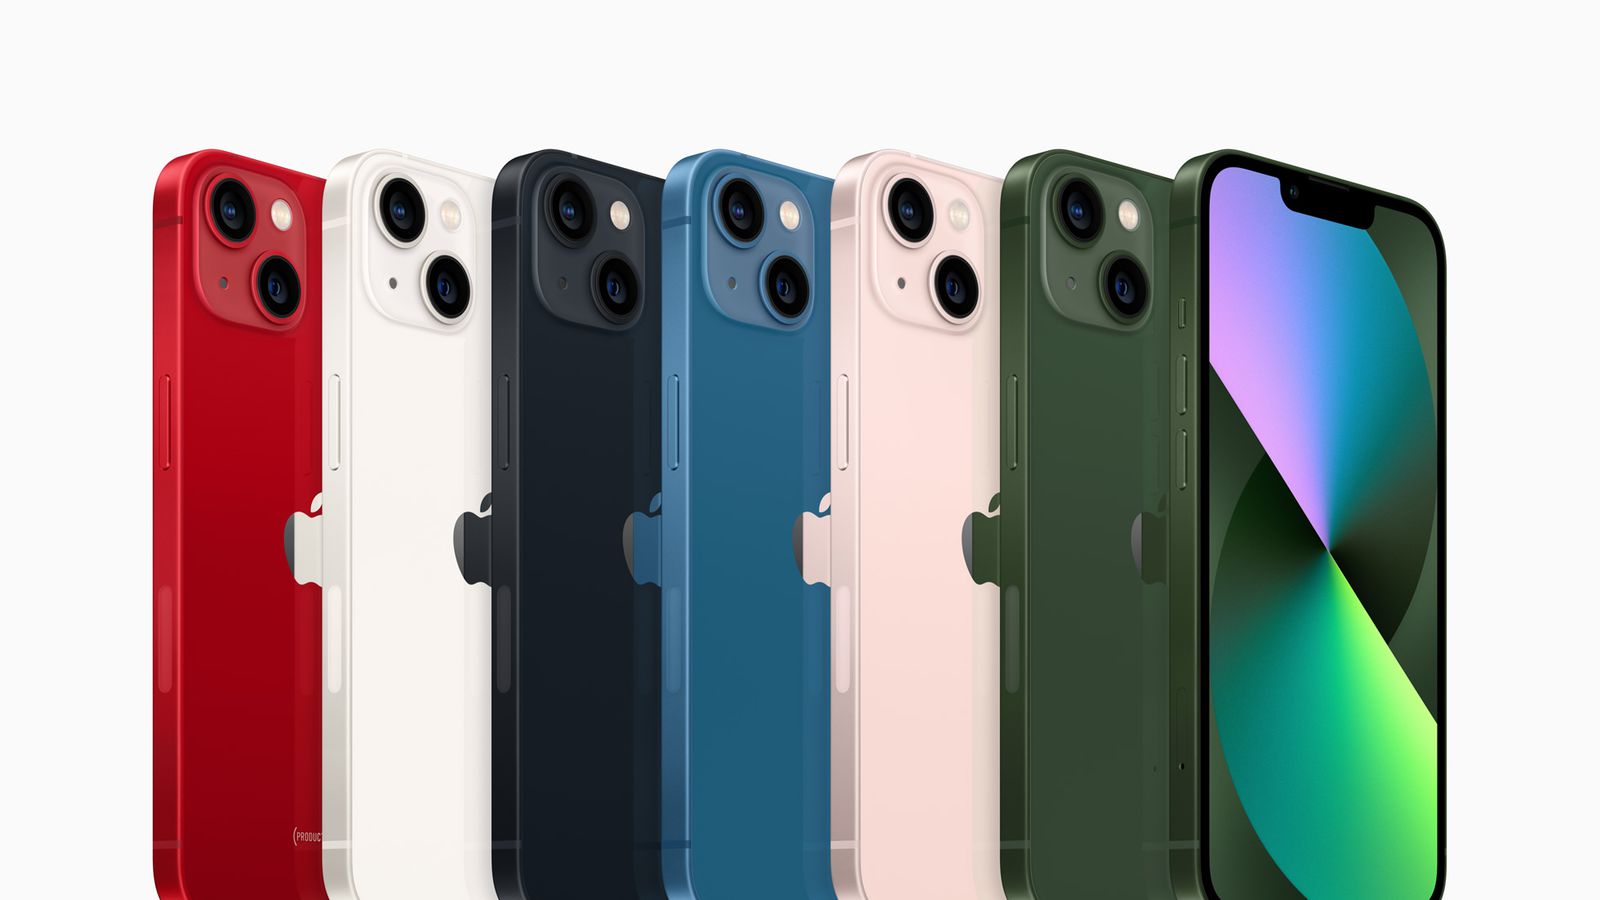 iPhone 13 sở hữu nhiều màu sắc đẹp mắt và sang trọng từ Midnight, Starlight, đến đỏ táo. Cùng chiêm ngưỡng những hình ảnh tuyệt đẹp về những lựa chọn màu sắc cho chiếc iPhone 13 của bạn.